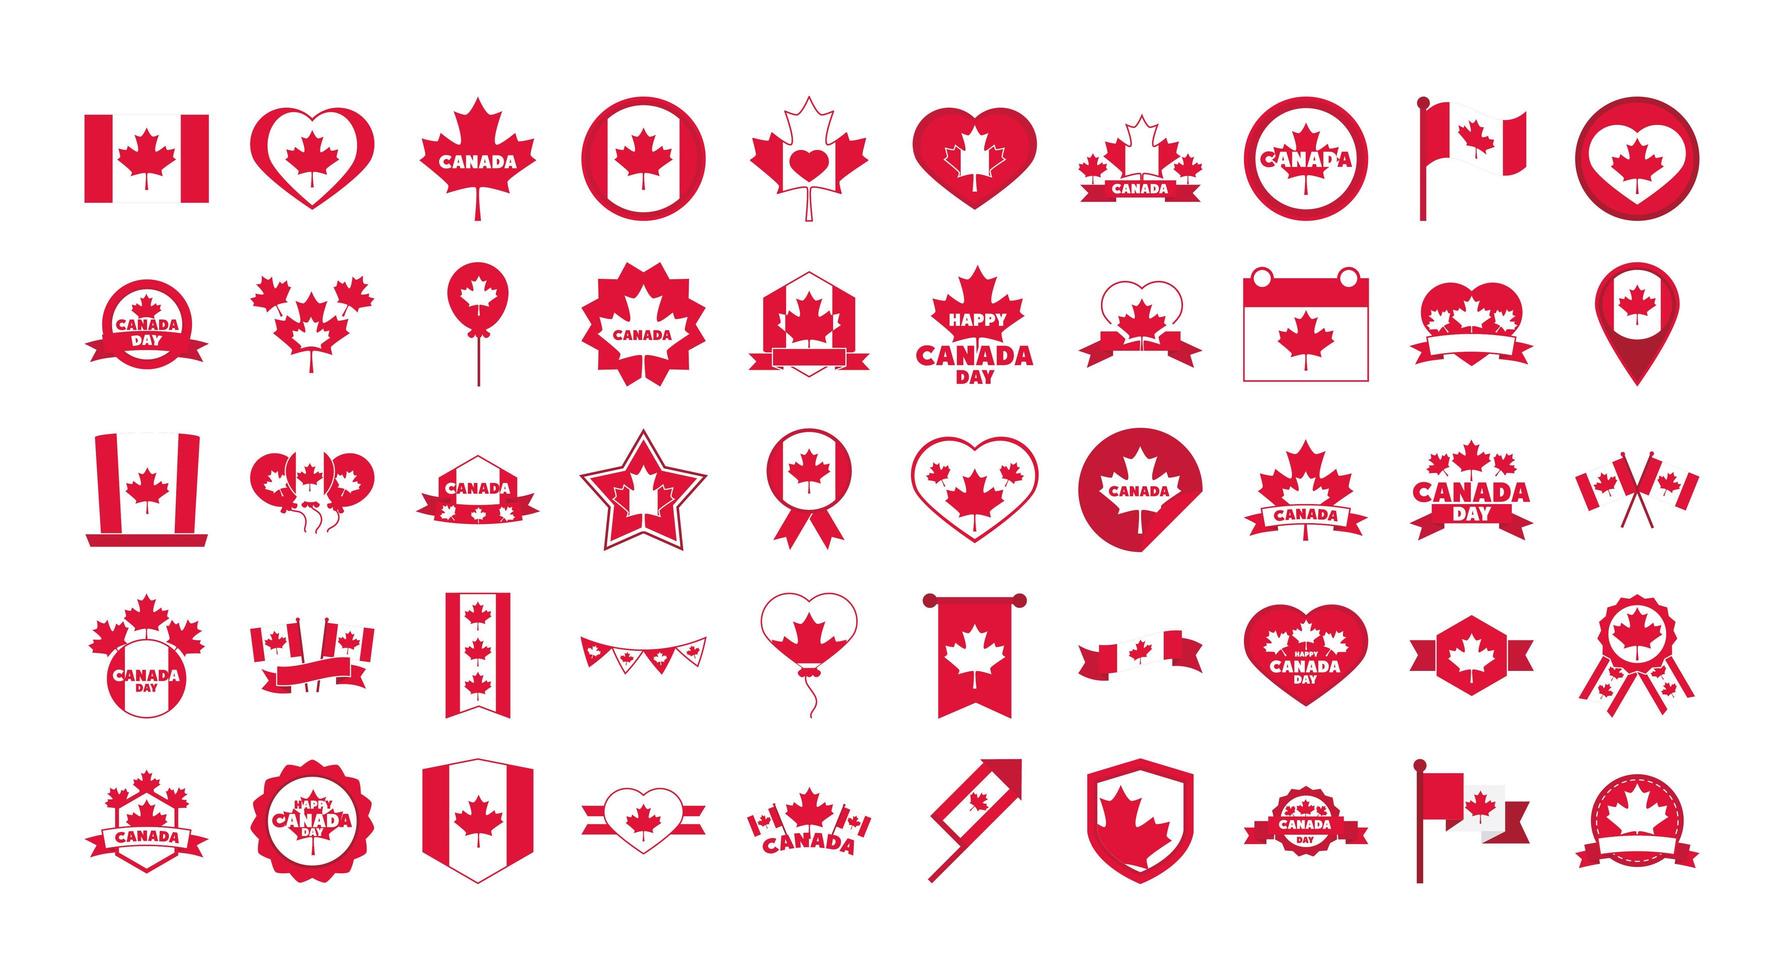 Kanada dag oberoende frihet nationell patriotism firande ikoner anger platt stilikon vektor